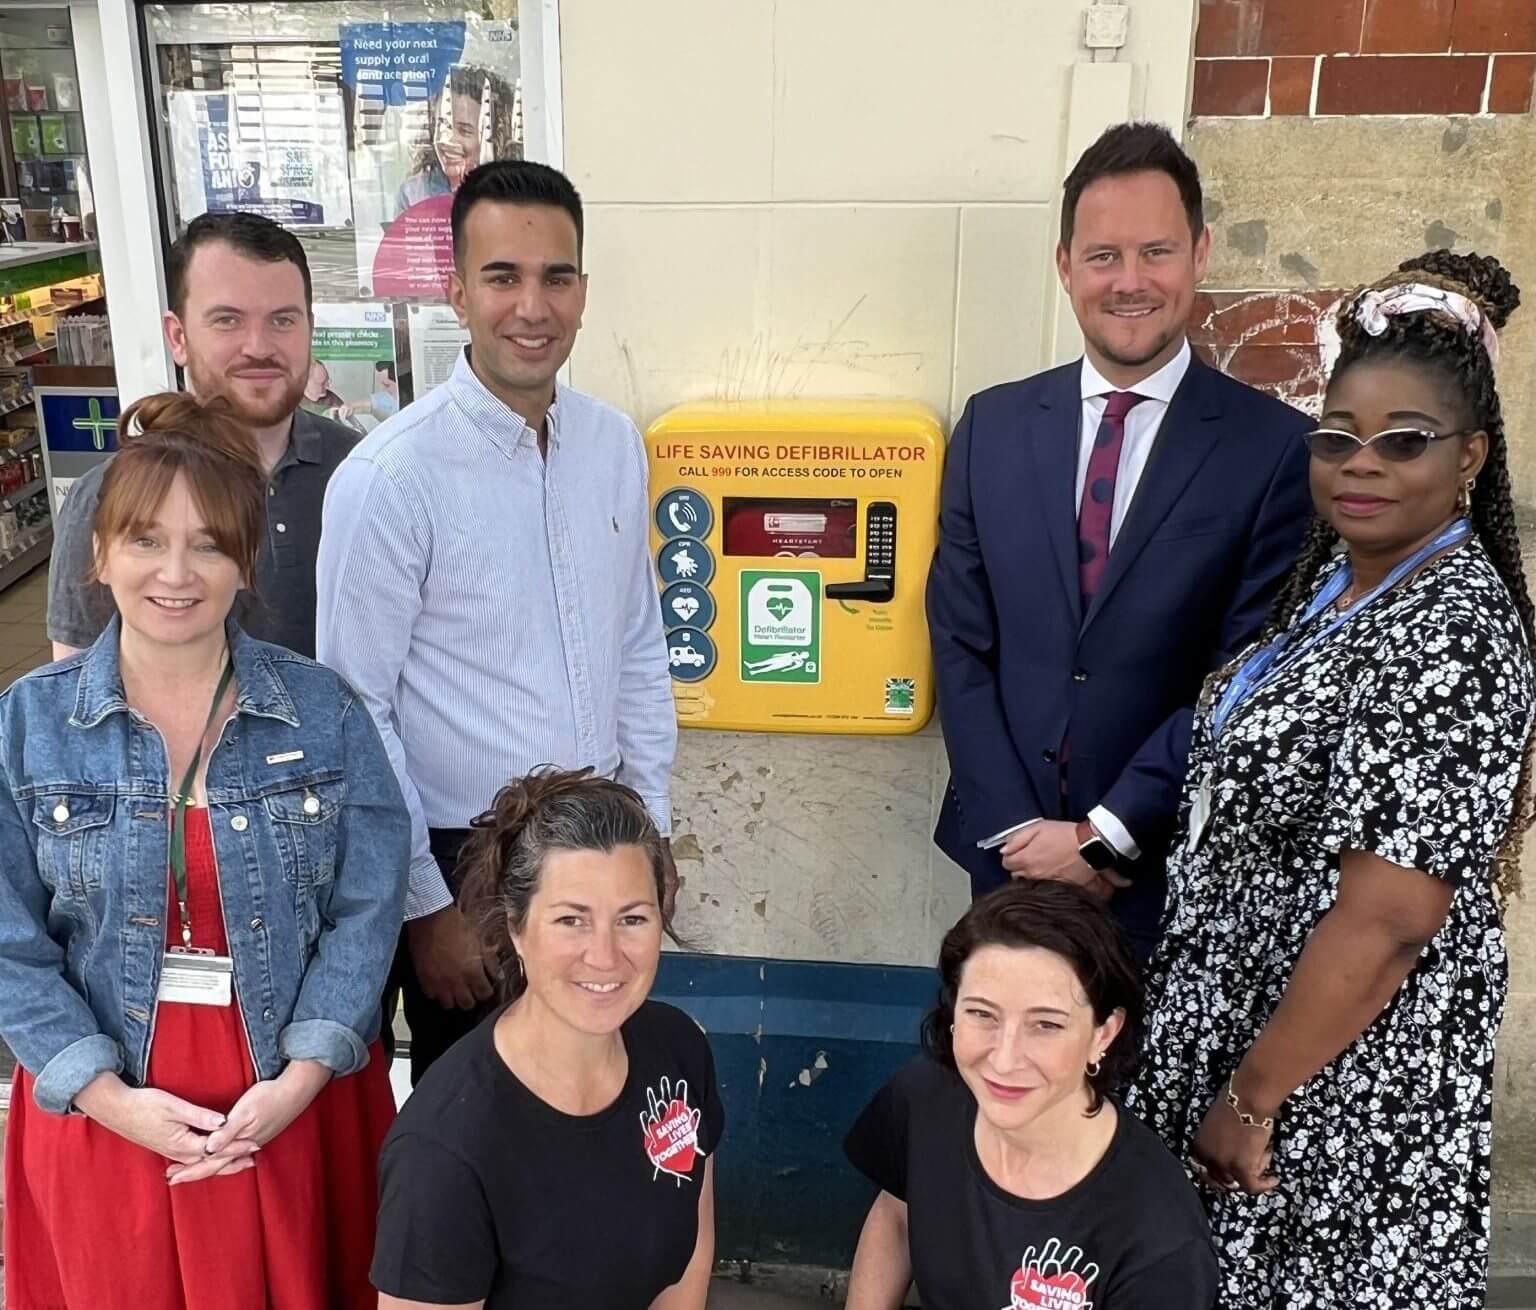 Installation of new defibrillator in Portsmouth